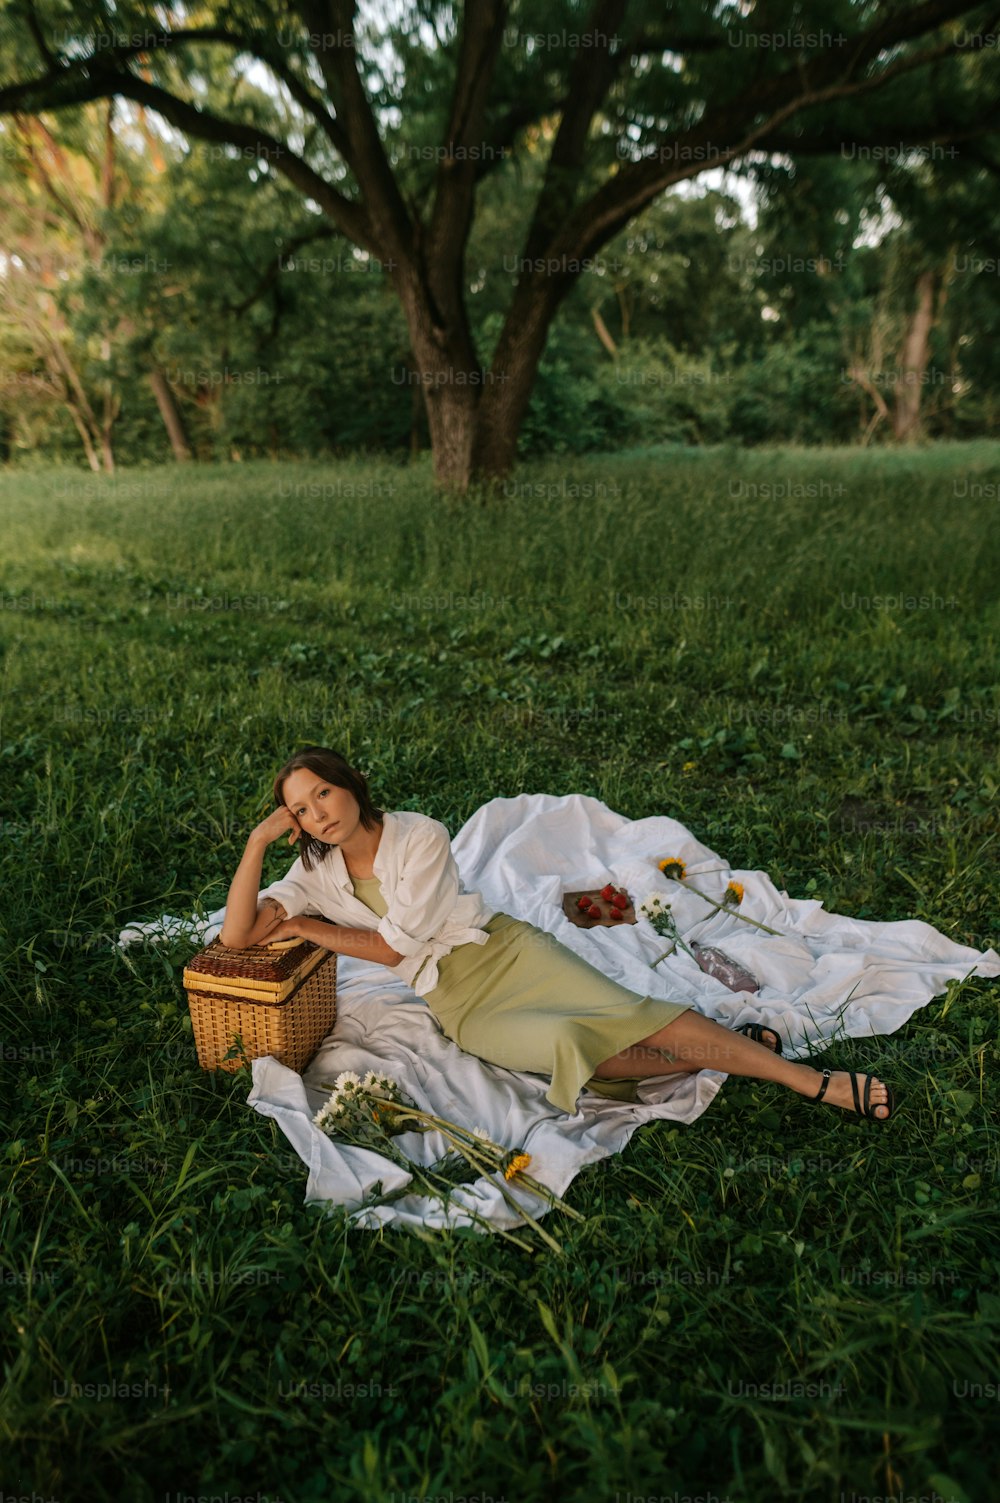 풀밭에 담요를 깔고 누워 있는 여자